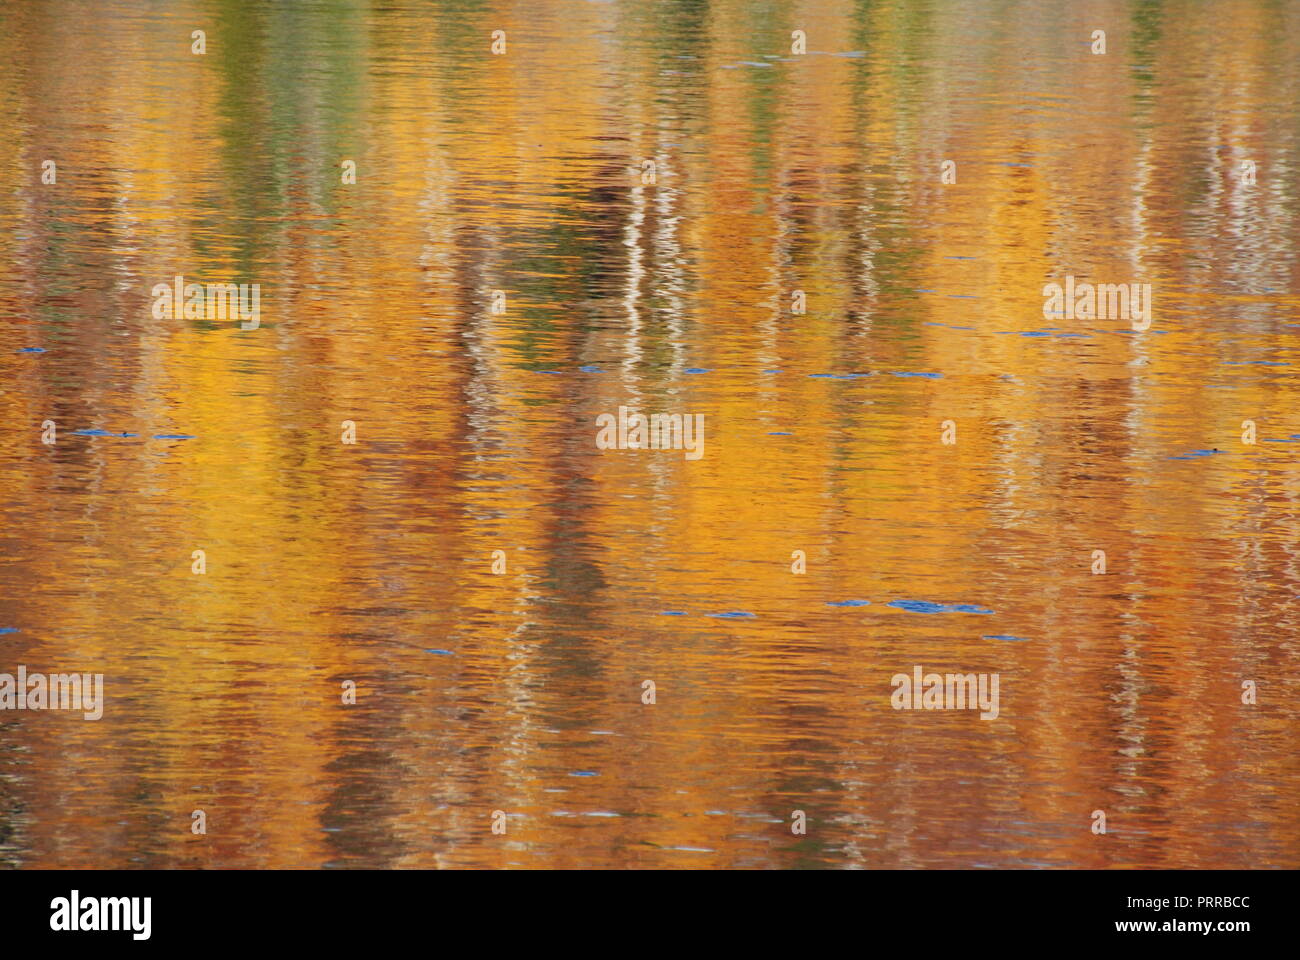 Die Reflexion der Bäume im Herbst in bewegtem Wasser, erstellen eine abstrakte und verschwommener Hintergrund in den Farben der golden, Gelb, Rot, Braun, Grün und Pfingstmontag Stockfoto